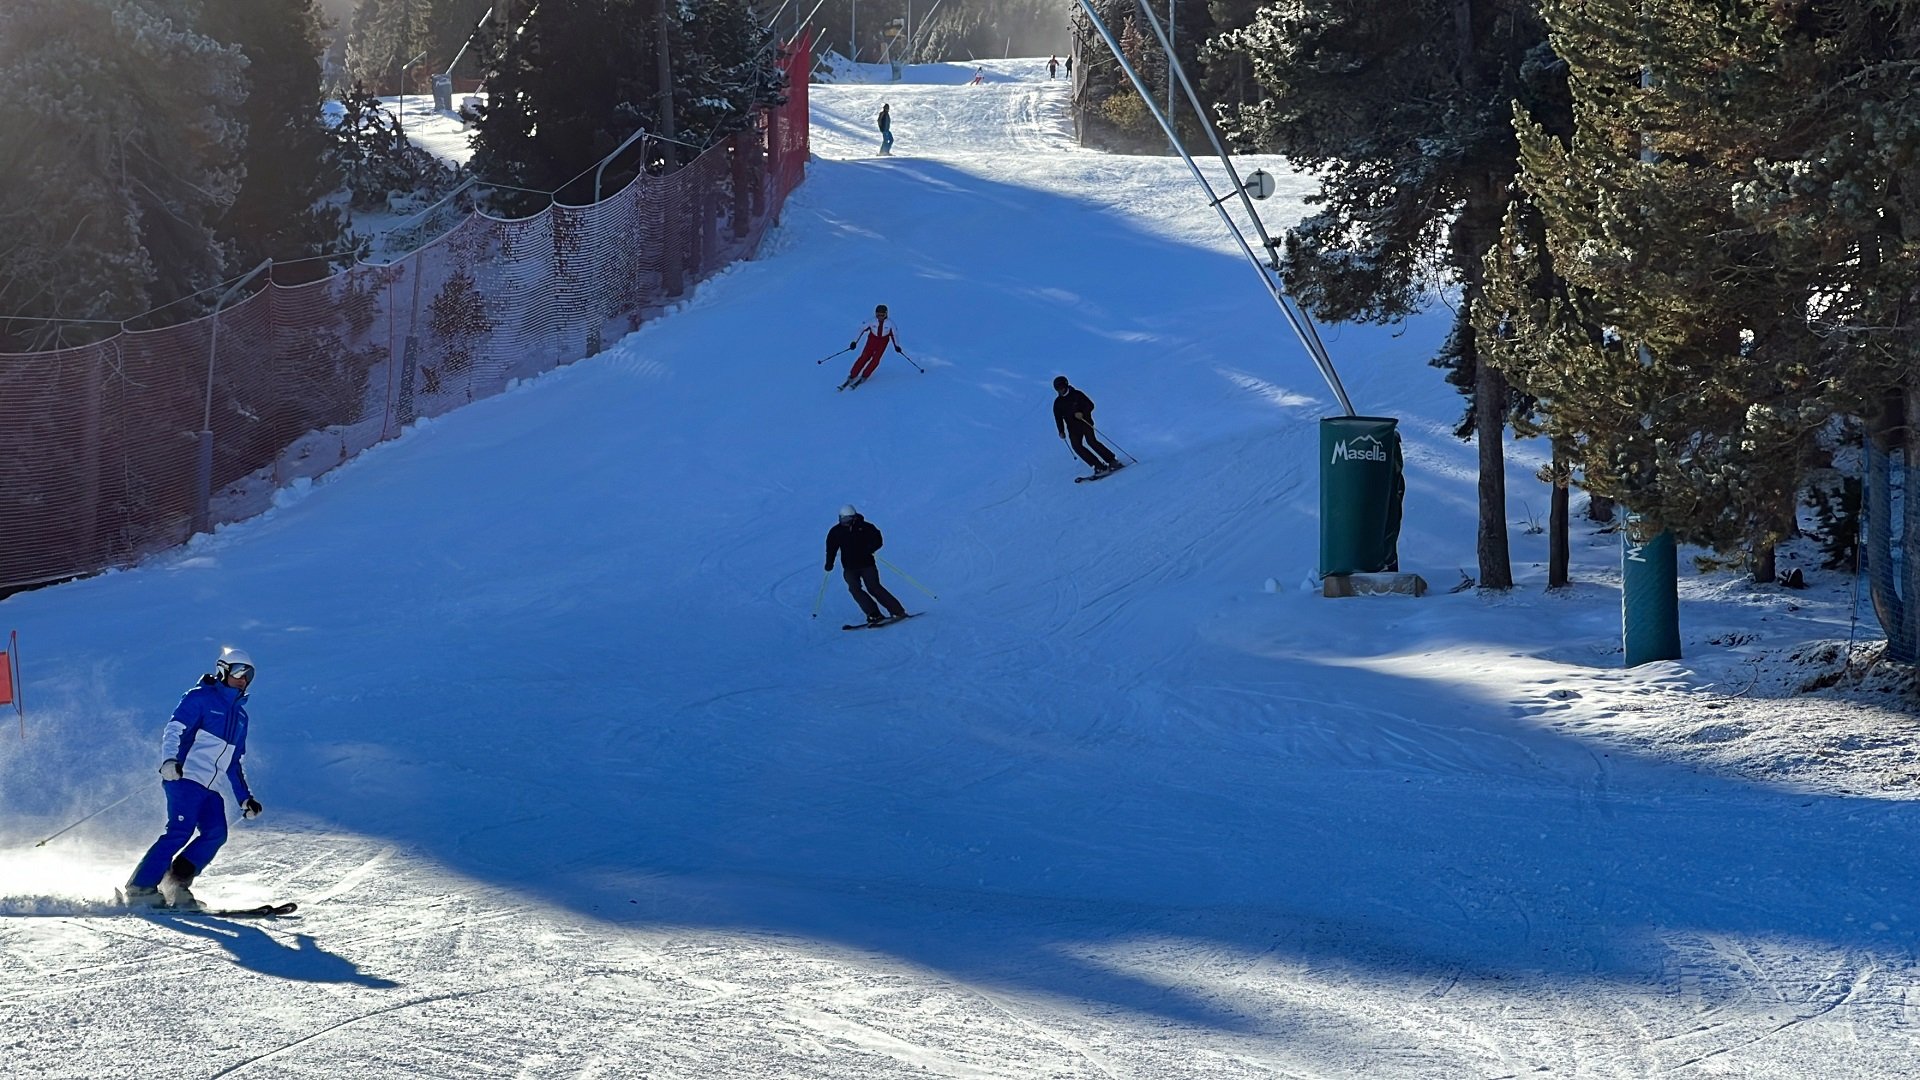 Empieza la temporada de esquí en las estaciones de FGC: Port Ainé, Masella y La Molina